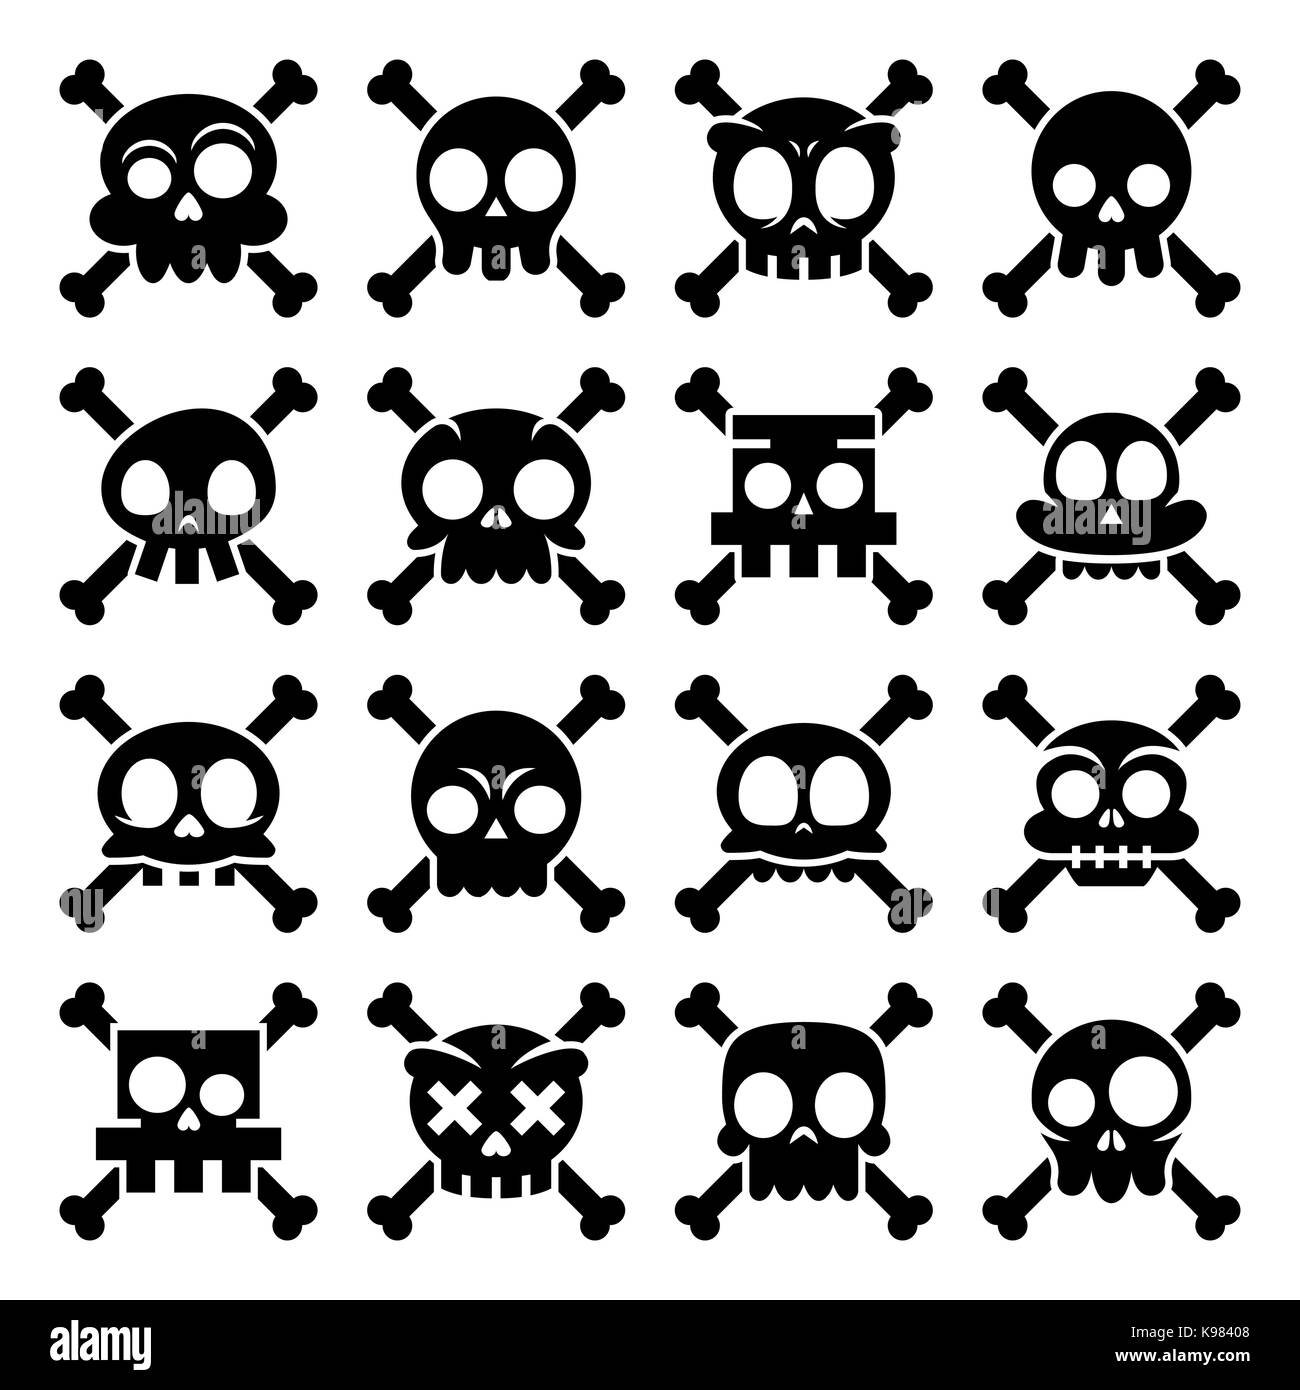 Halloween vector cartoon skull with bones icons, Mexican cute black sugar skulls design set, Dia de los Muertos Stock Vector